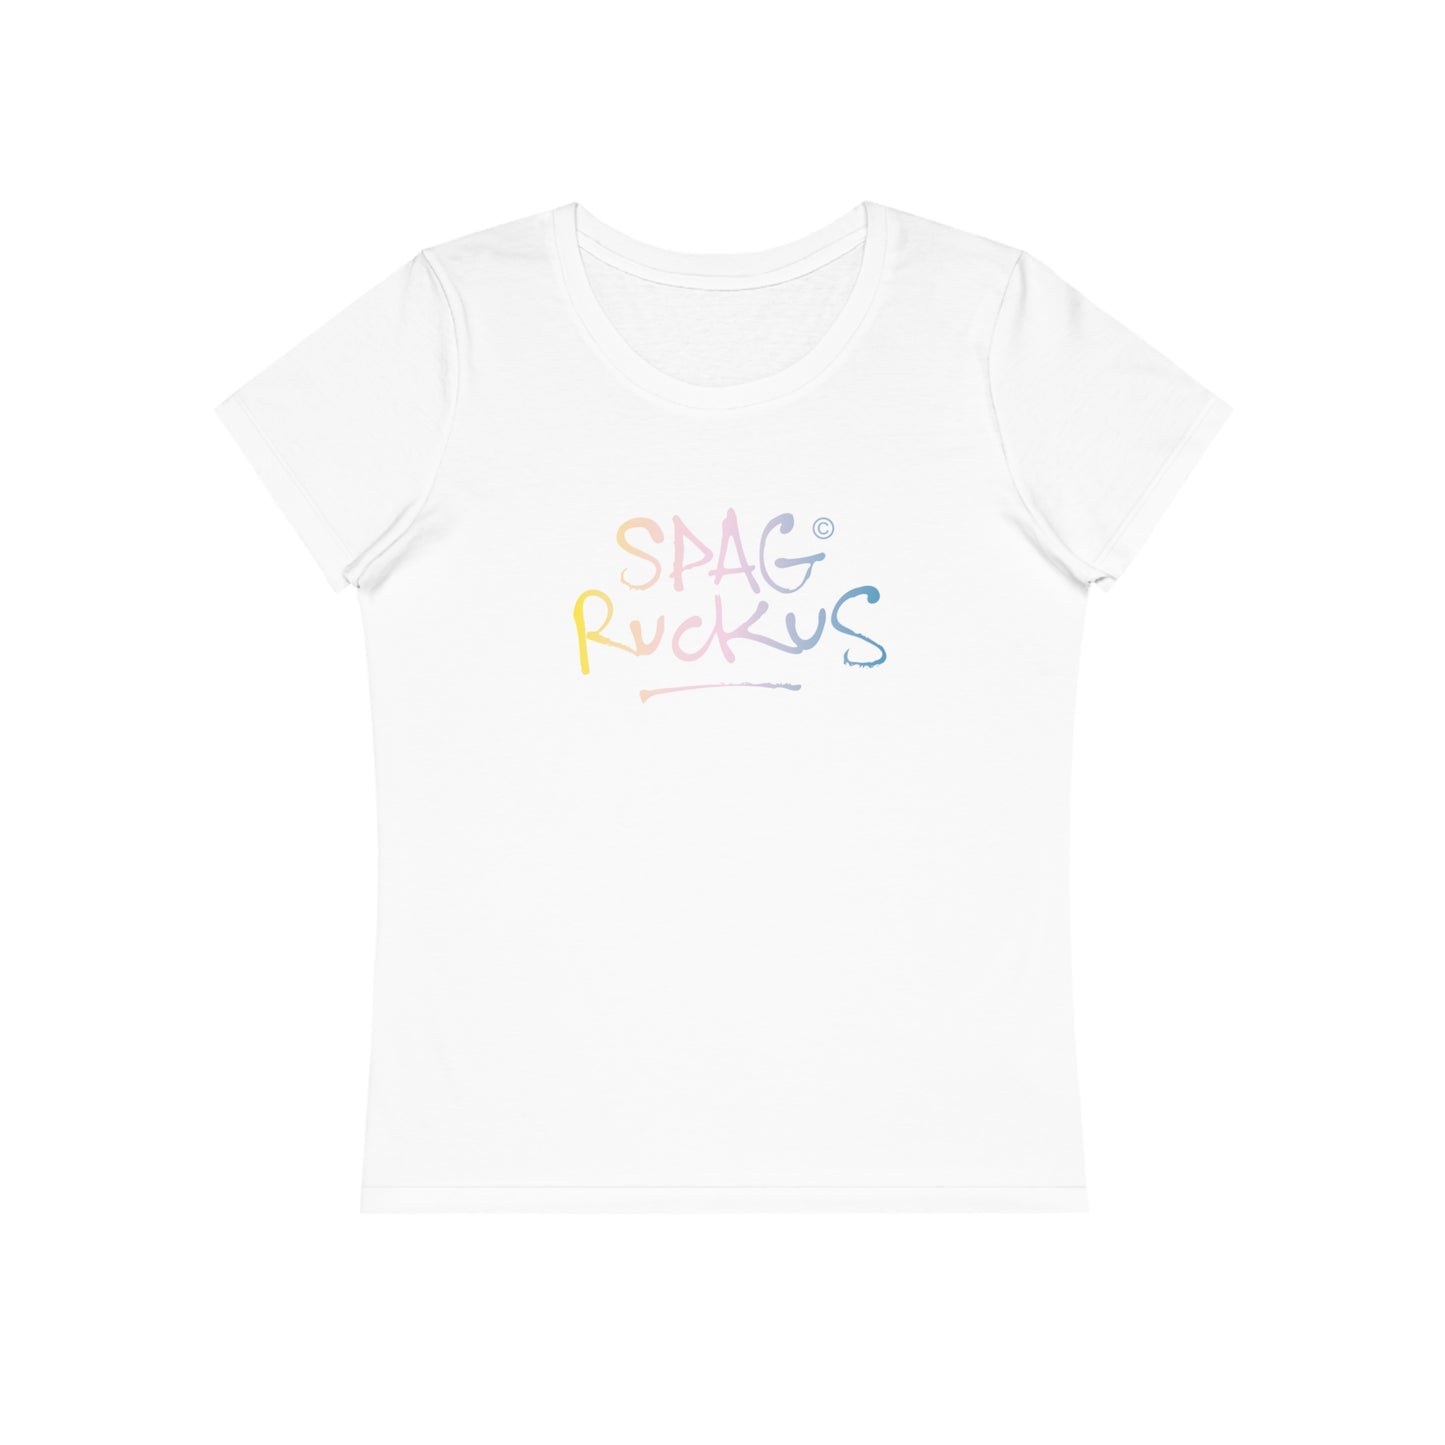 EUROPE - Spag Ruckus Women Organic T-Shirt